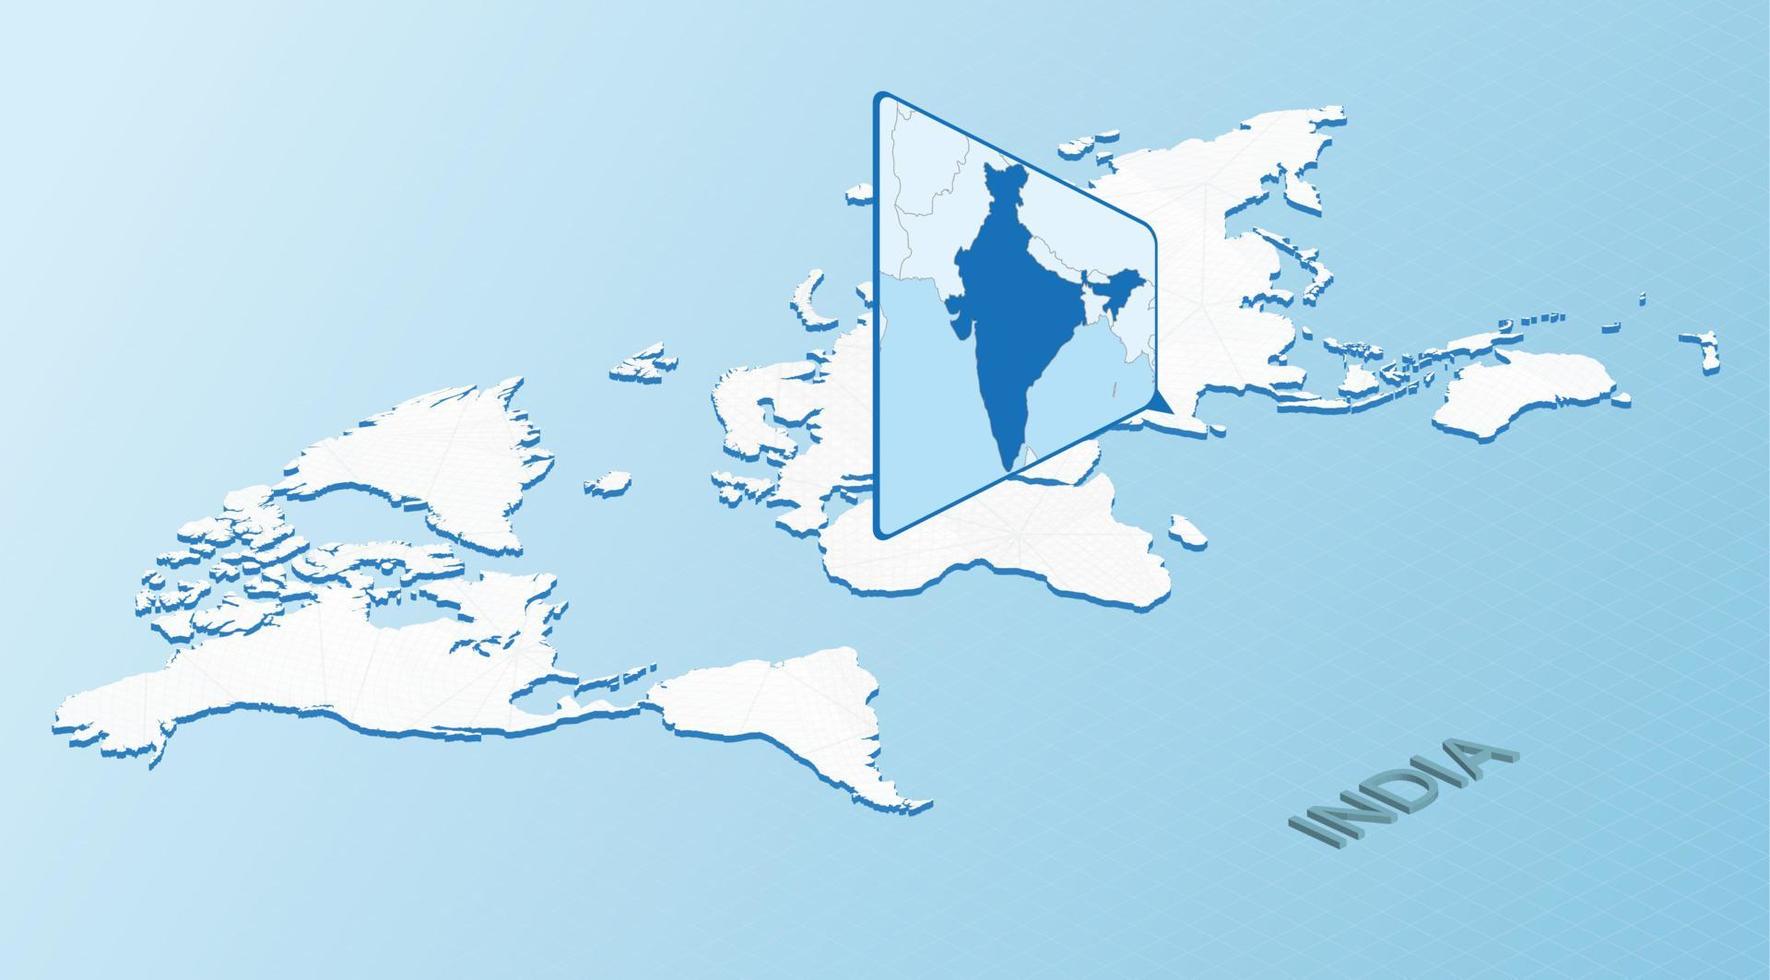 carte du monde en style isométrique avec carte détaillée de l'inde. carte de l'inde bleu clair avec carte du monde abstraite. vecteur